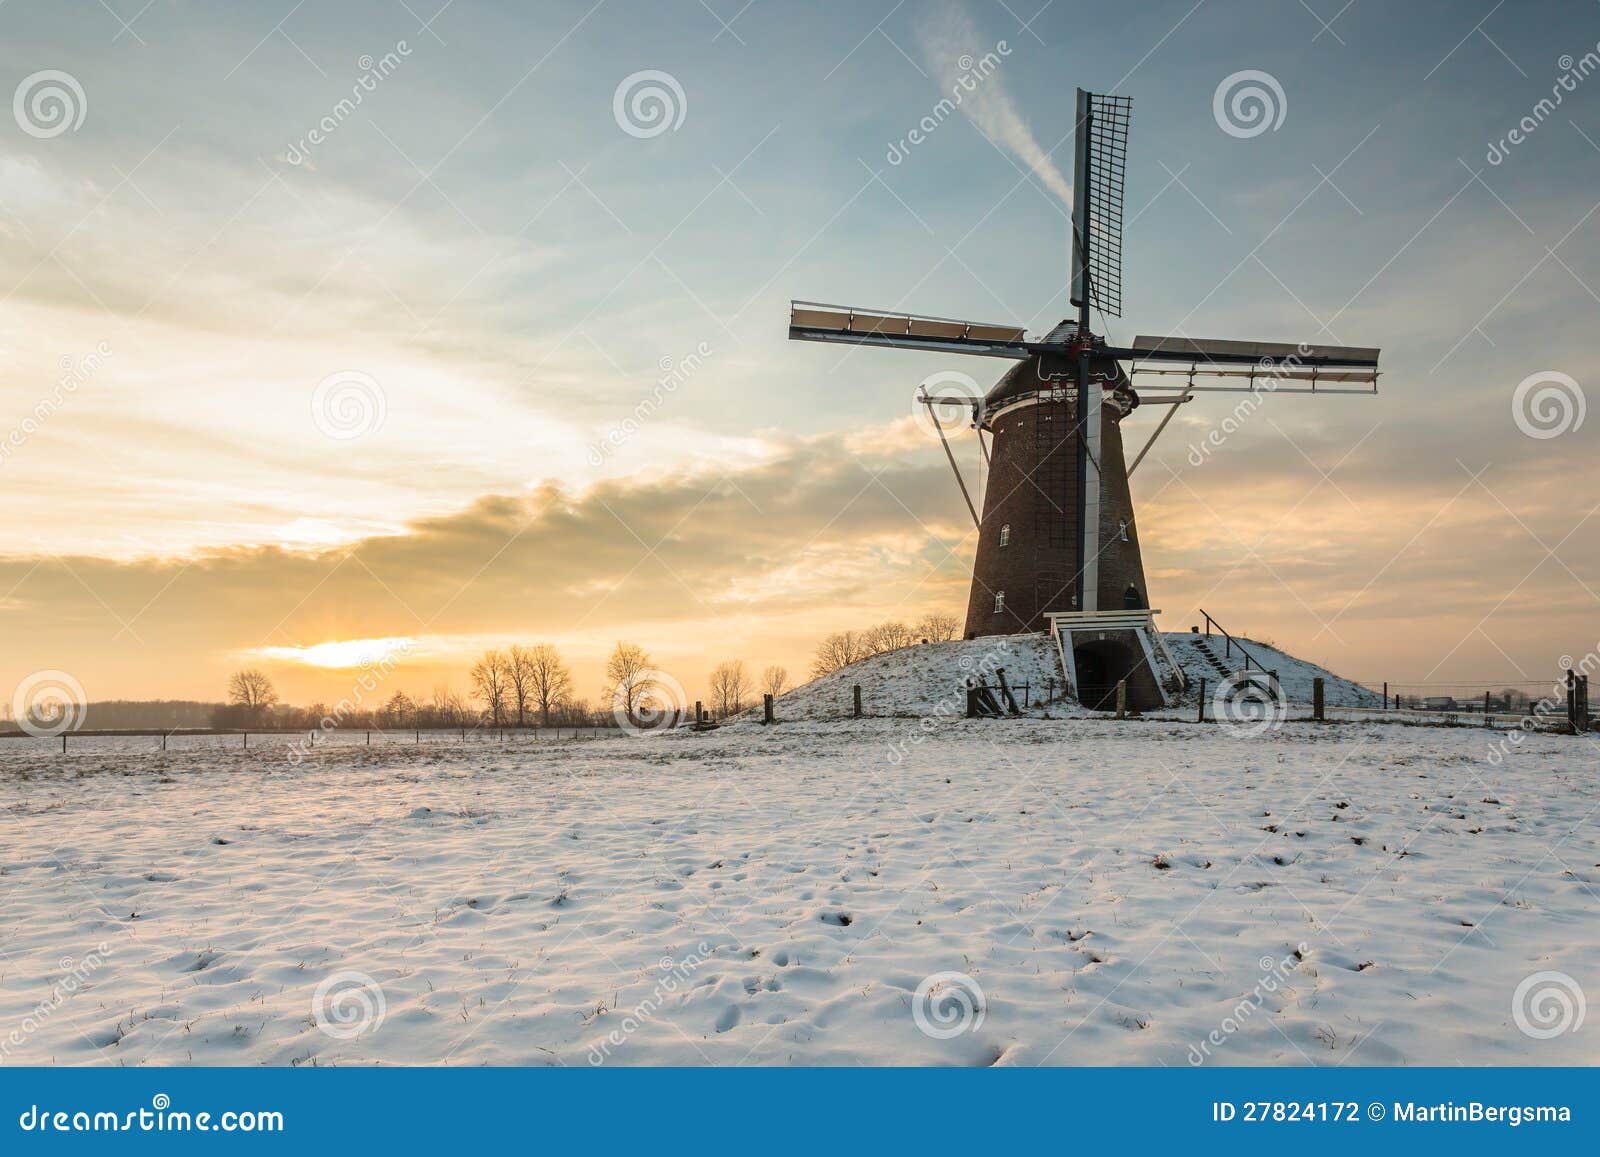 dutch windmill in wintertime